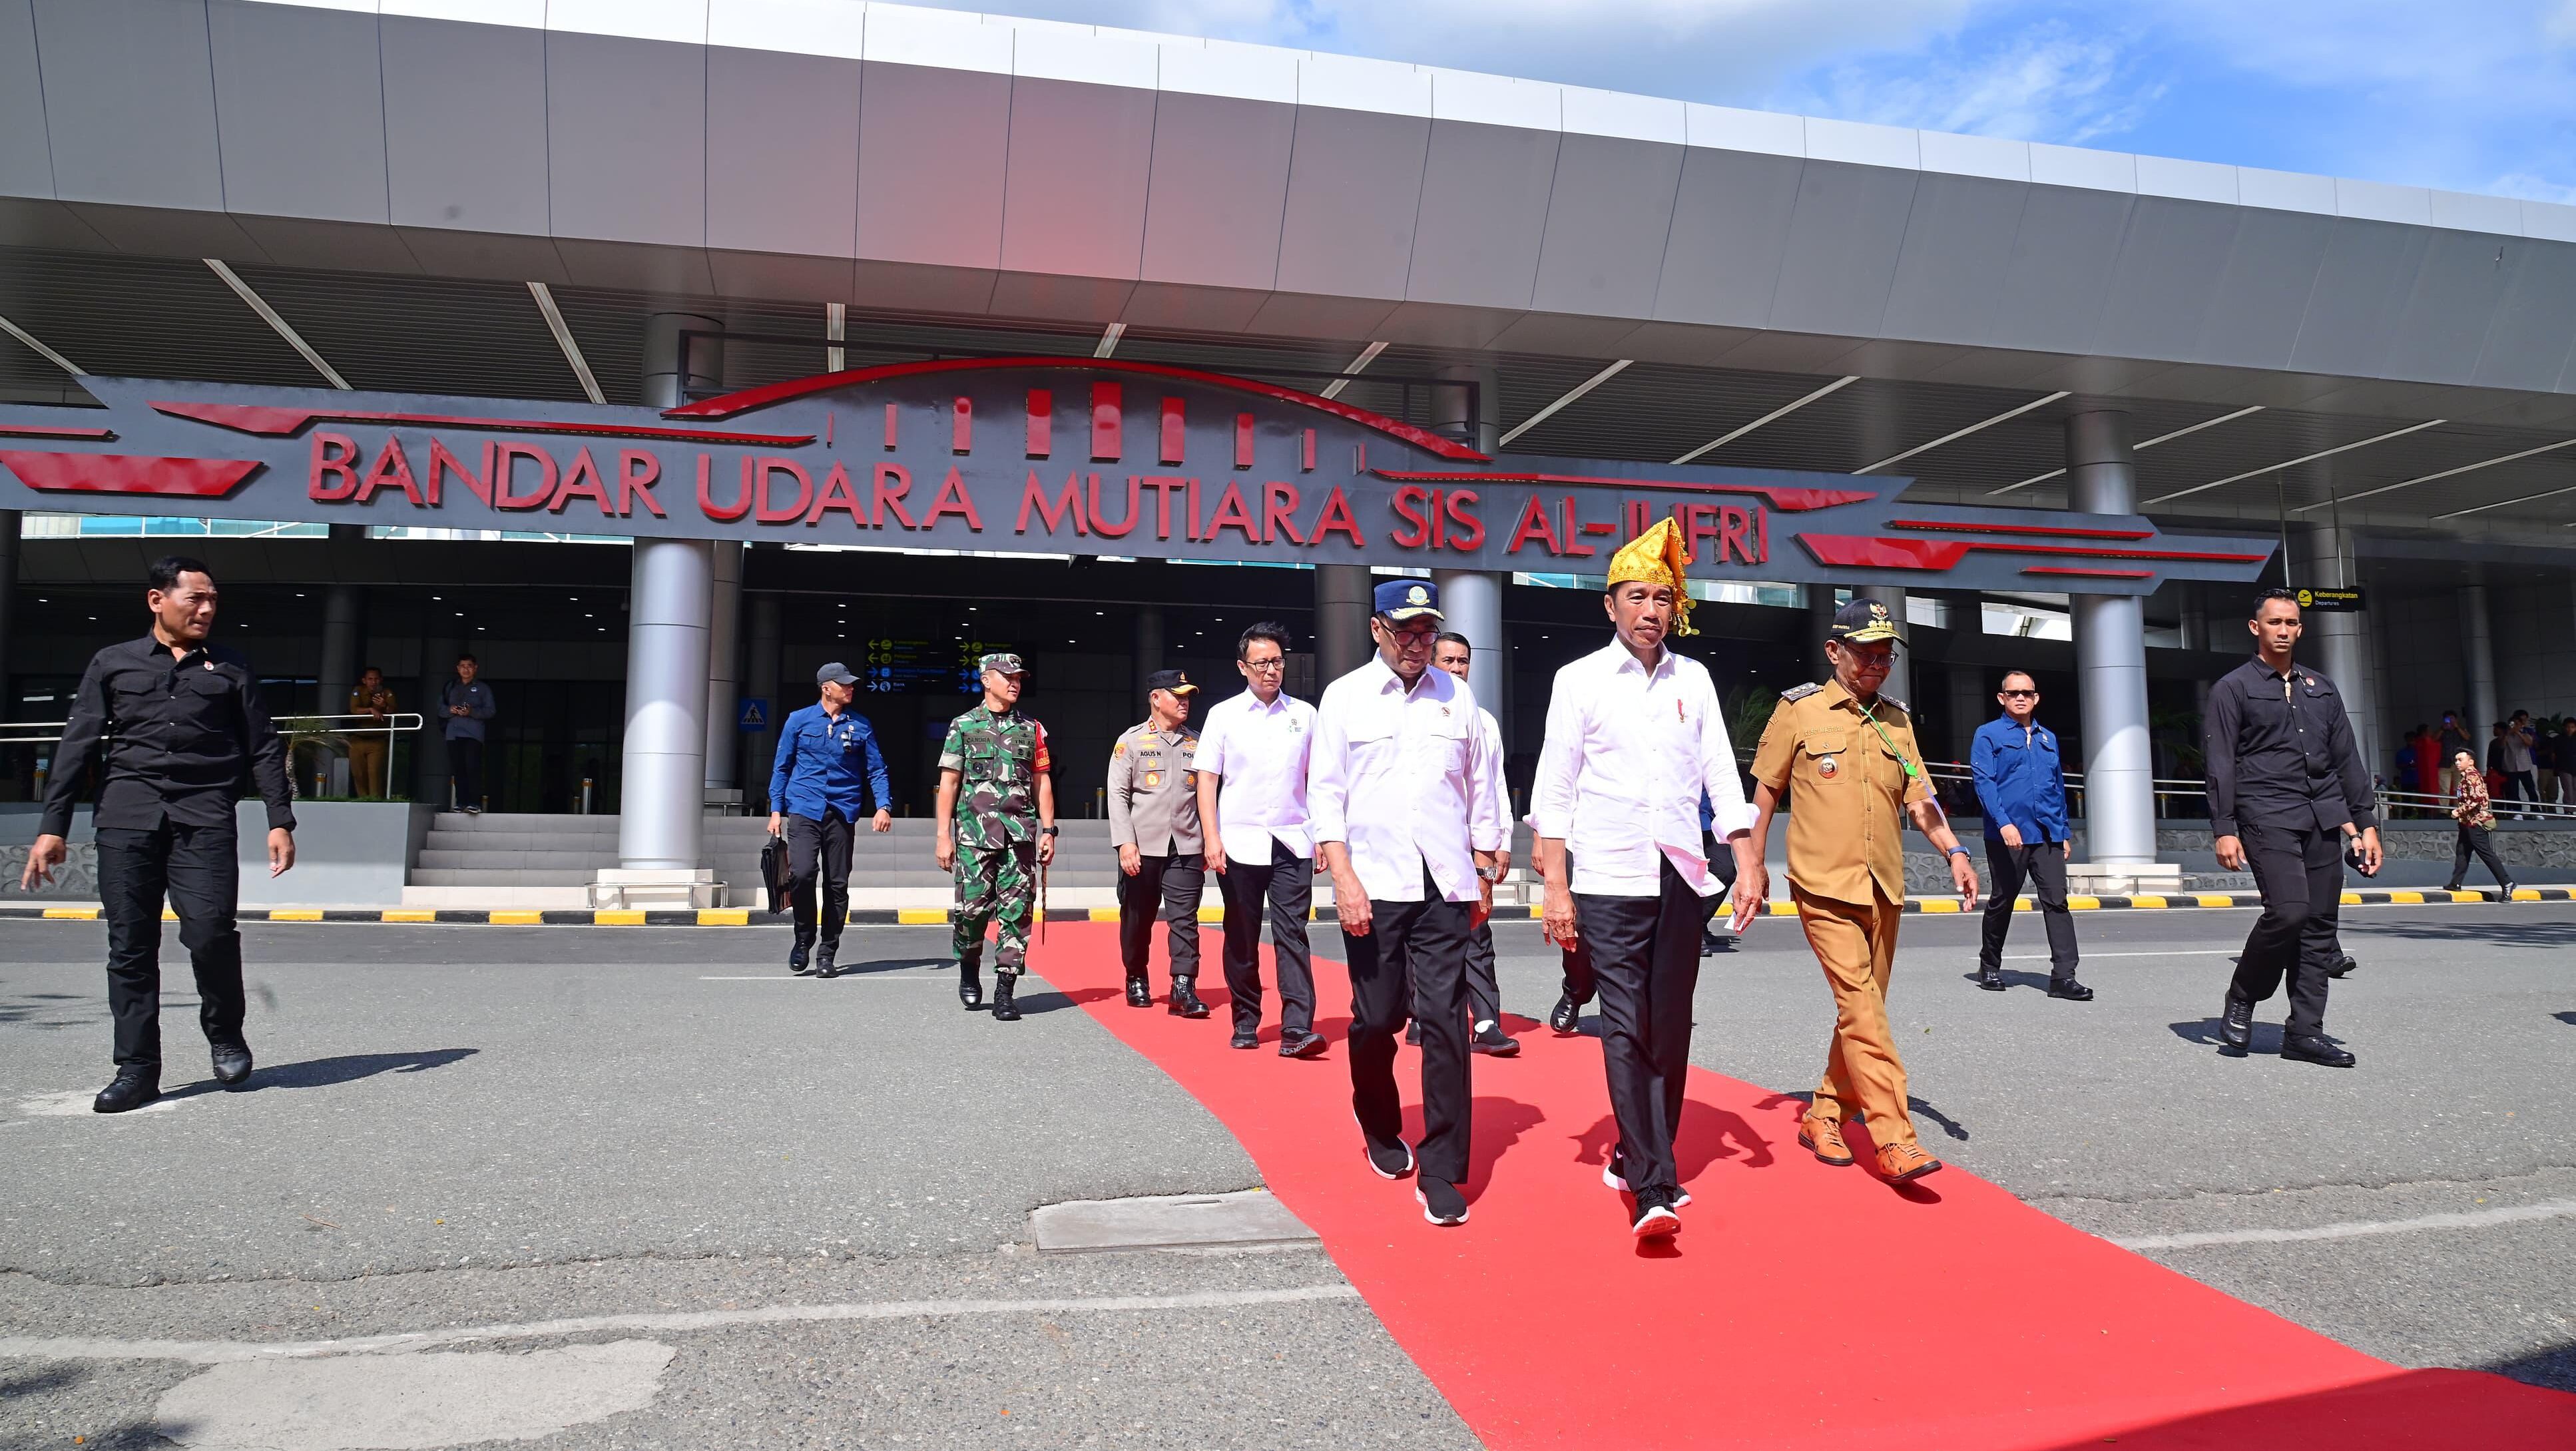 Bandara Mutiara SIS Al-Jufri dan Tiga Bandara Lainnya Resmi Dibuka oleh Presiden Jokowi